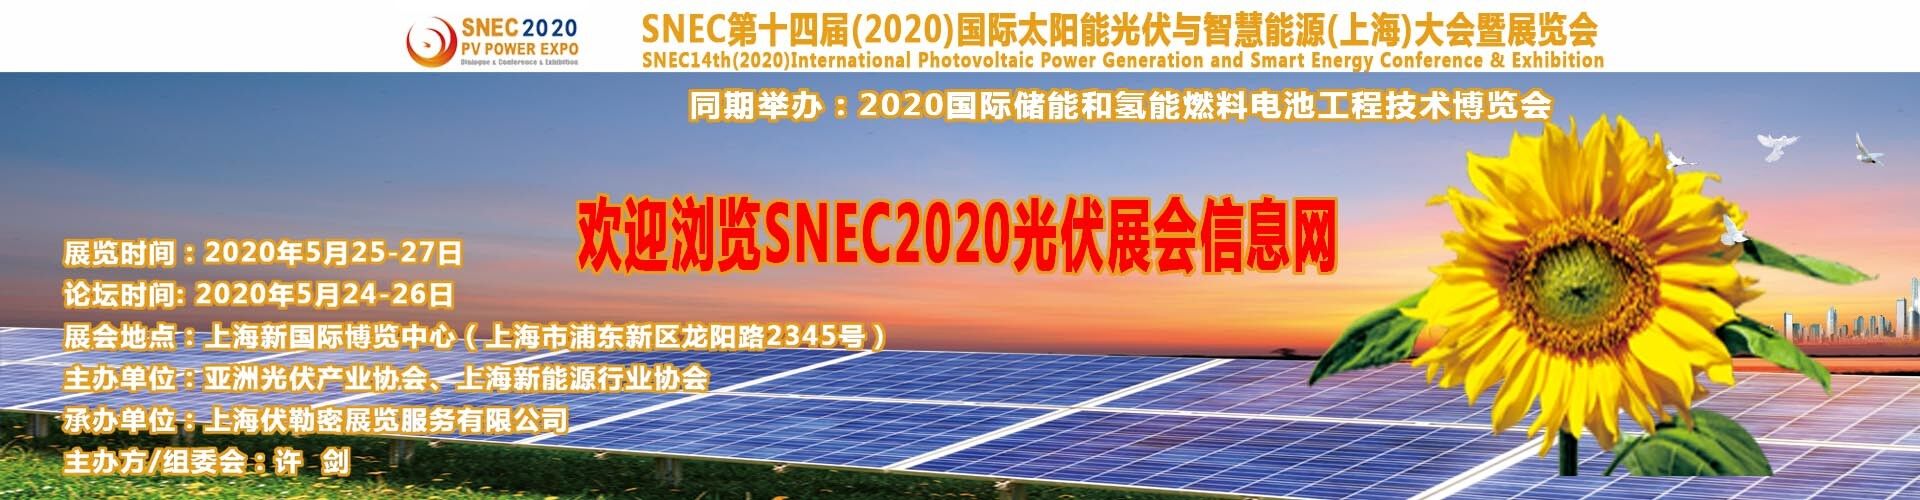 天津支架公司參加2018SNEC*太陽能展會